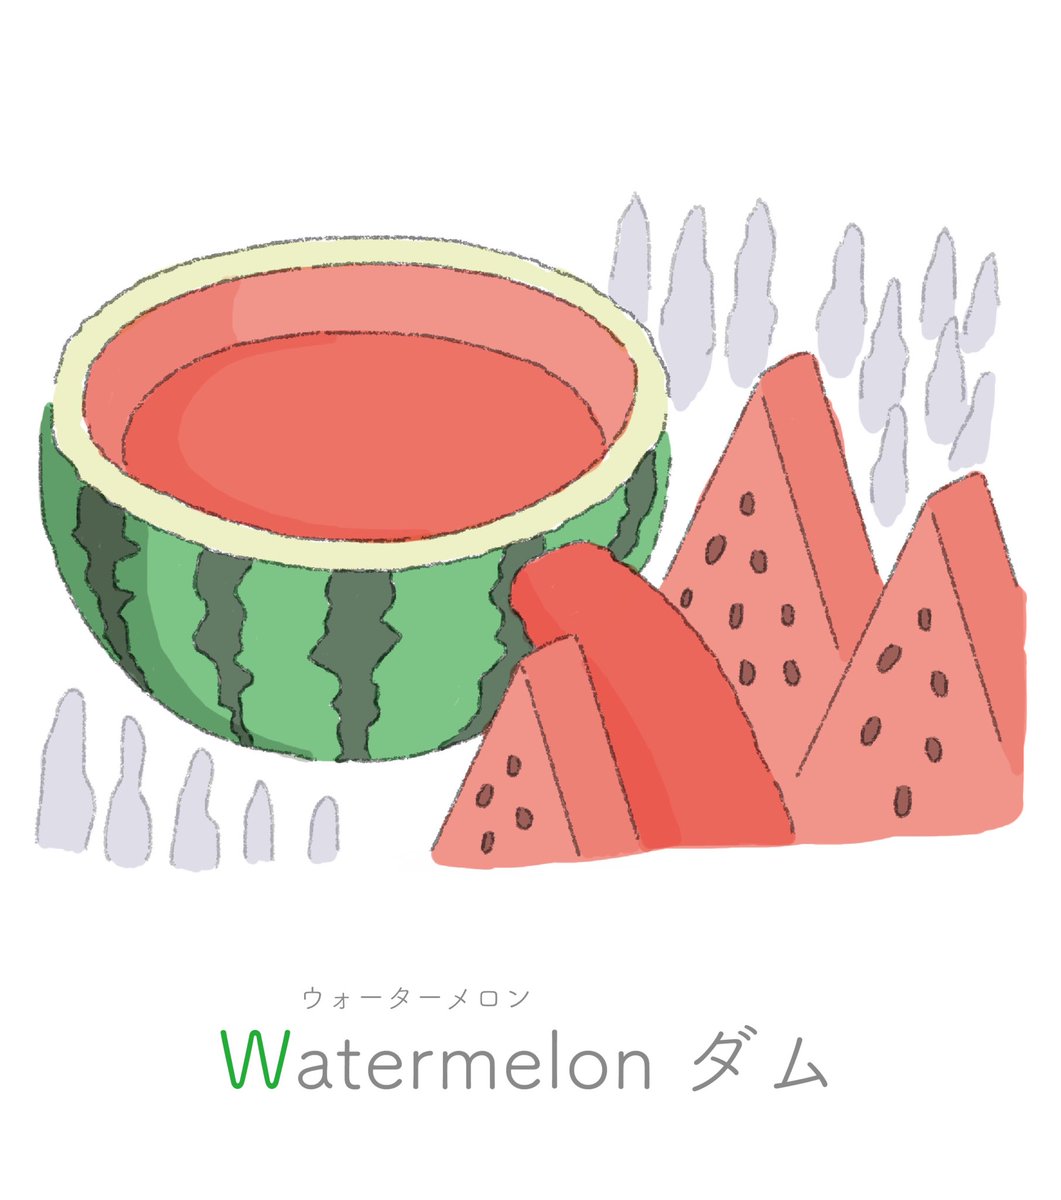 Watermelon ダム Abcity W すいか果汁をためたダム こたのイラスト